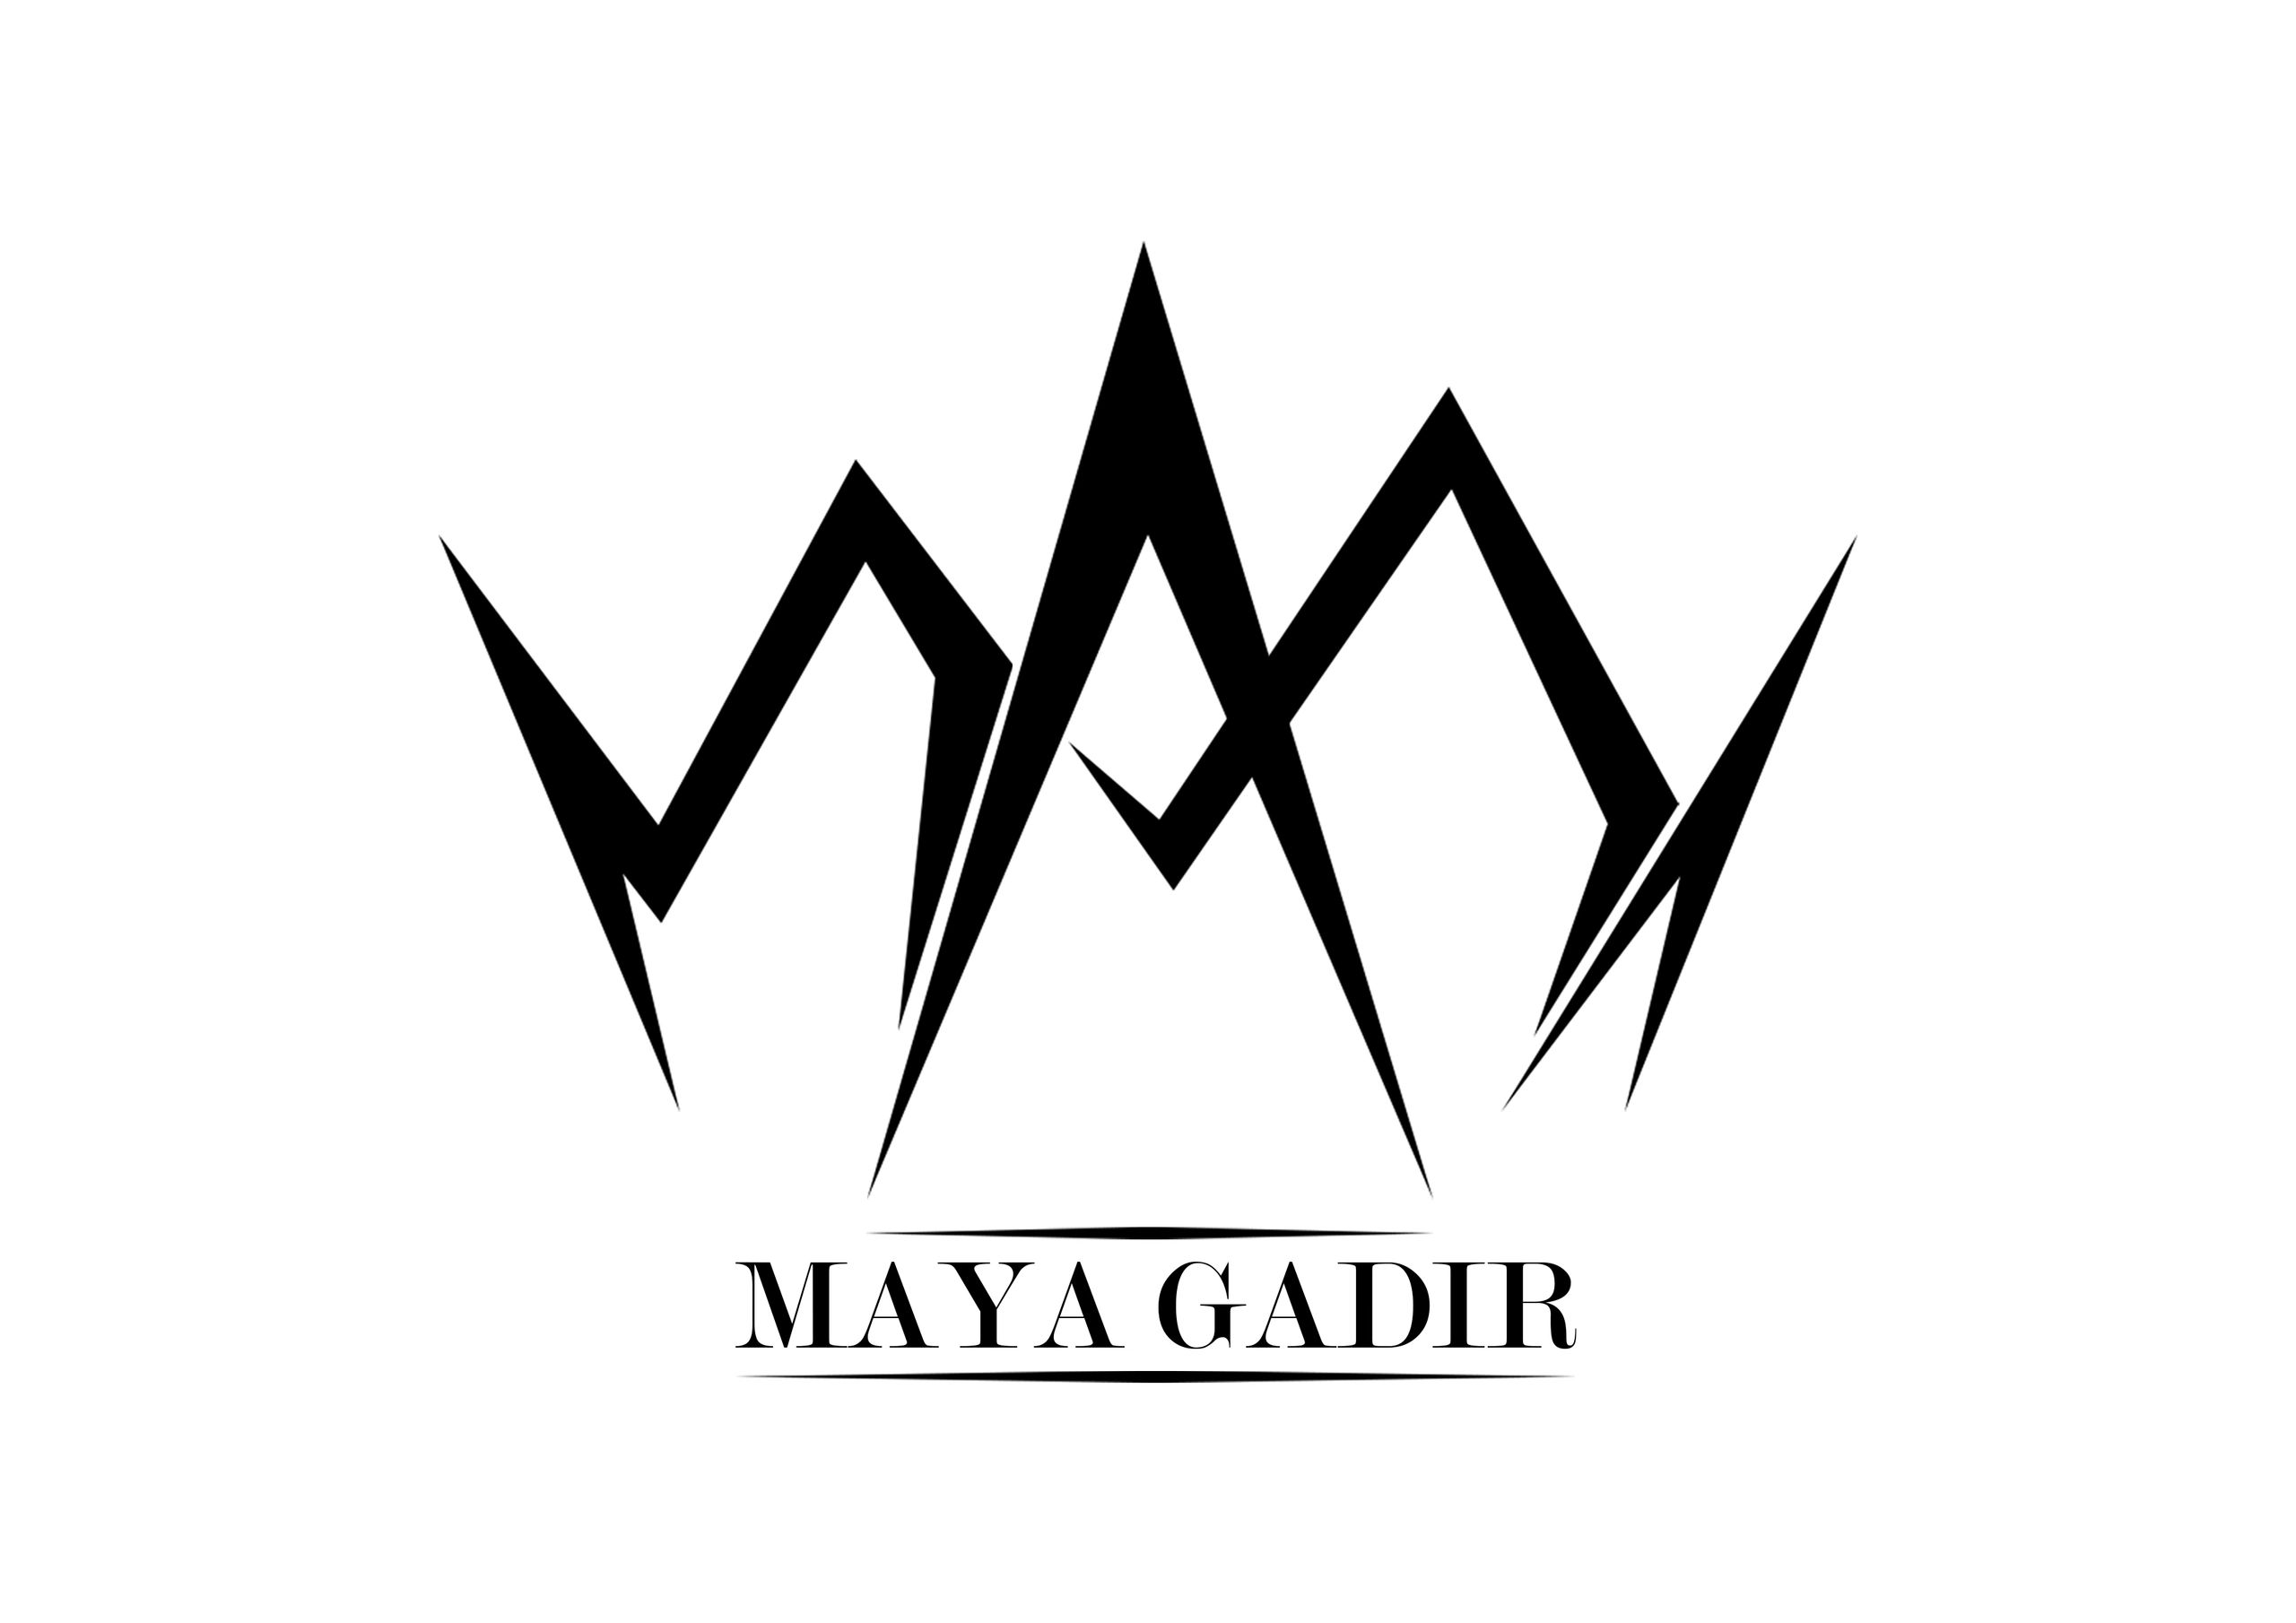 Maya Gadir